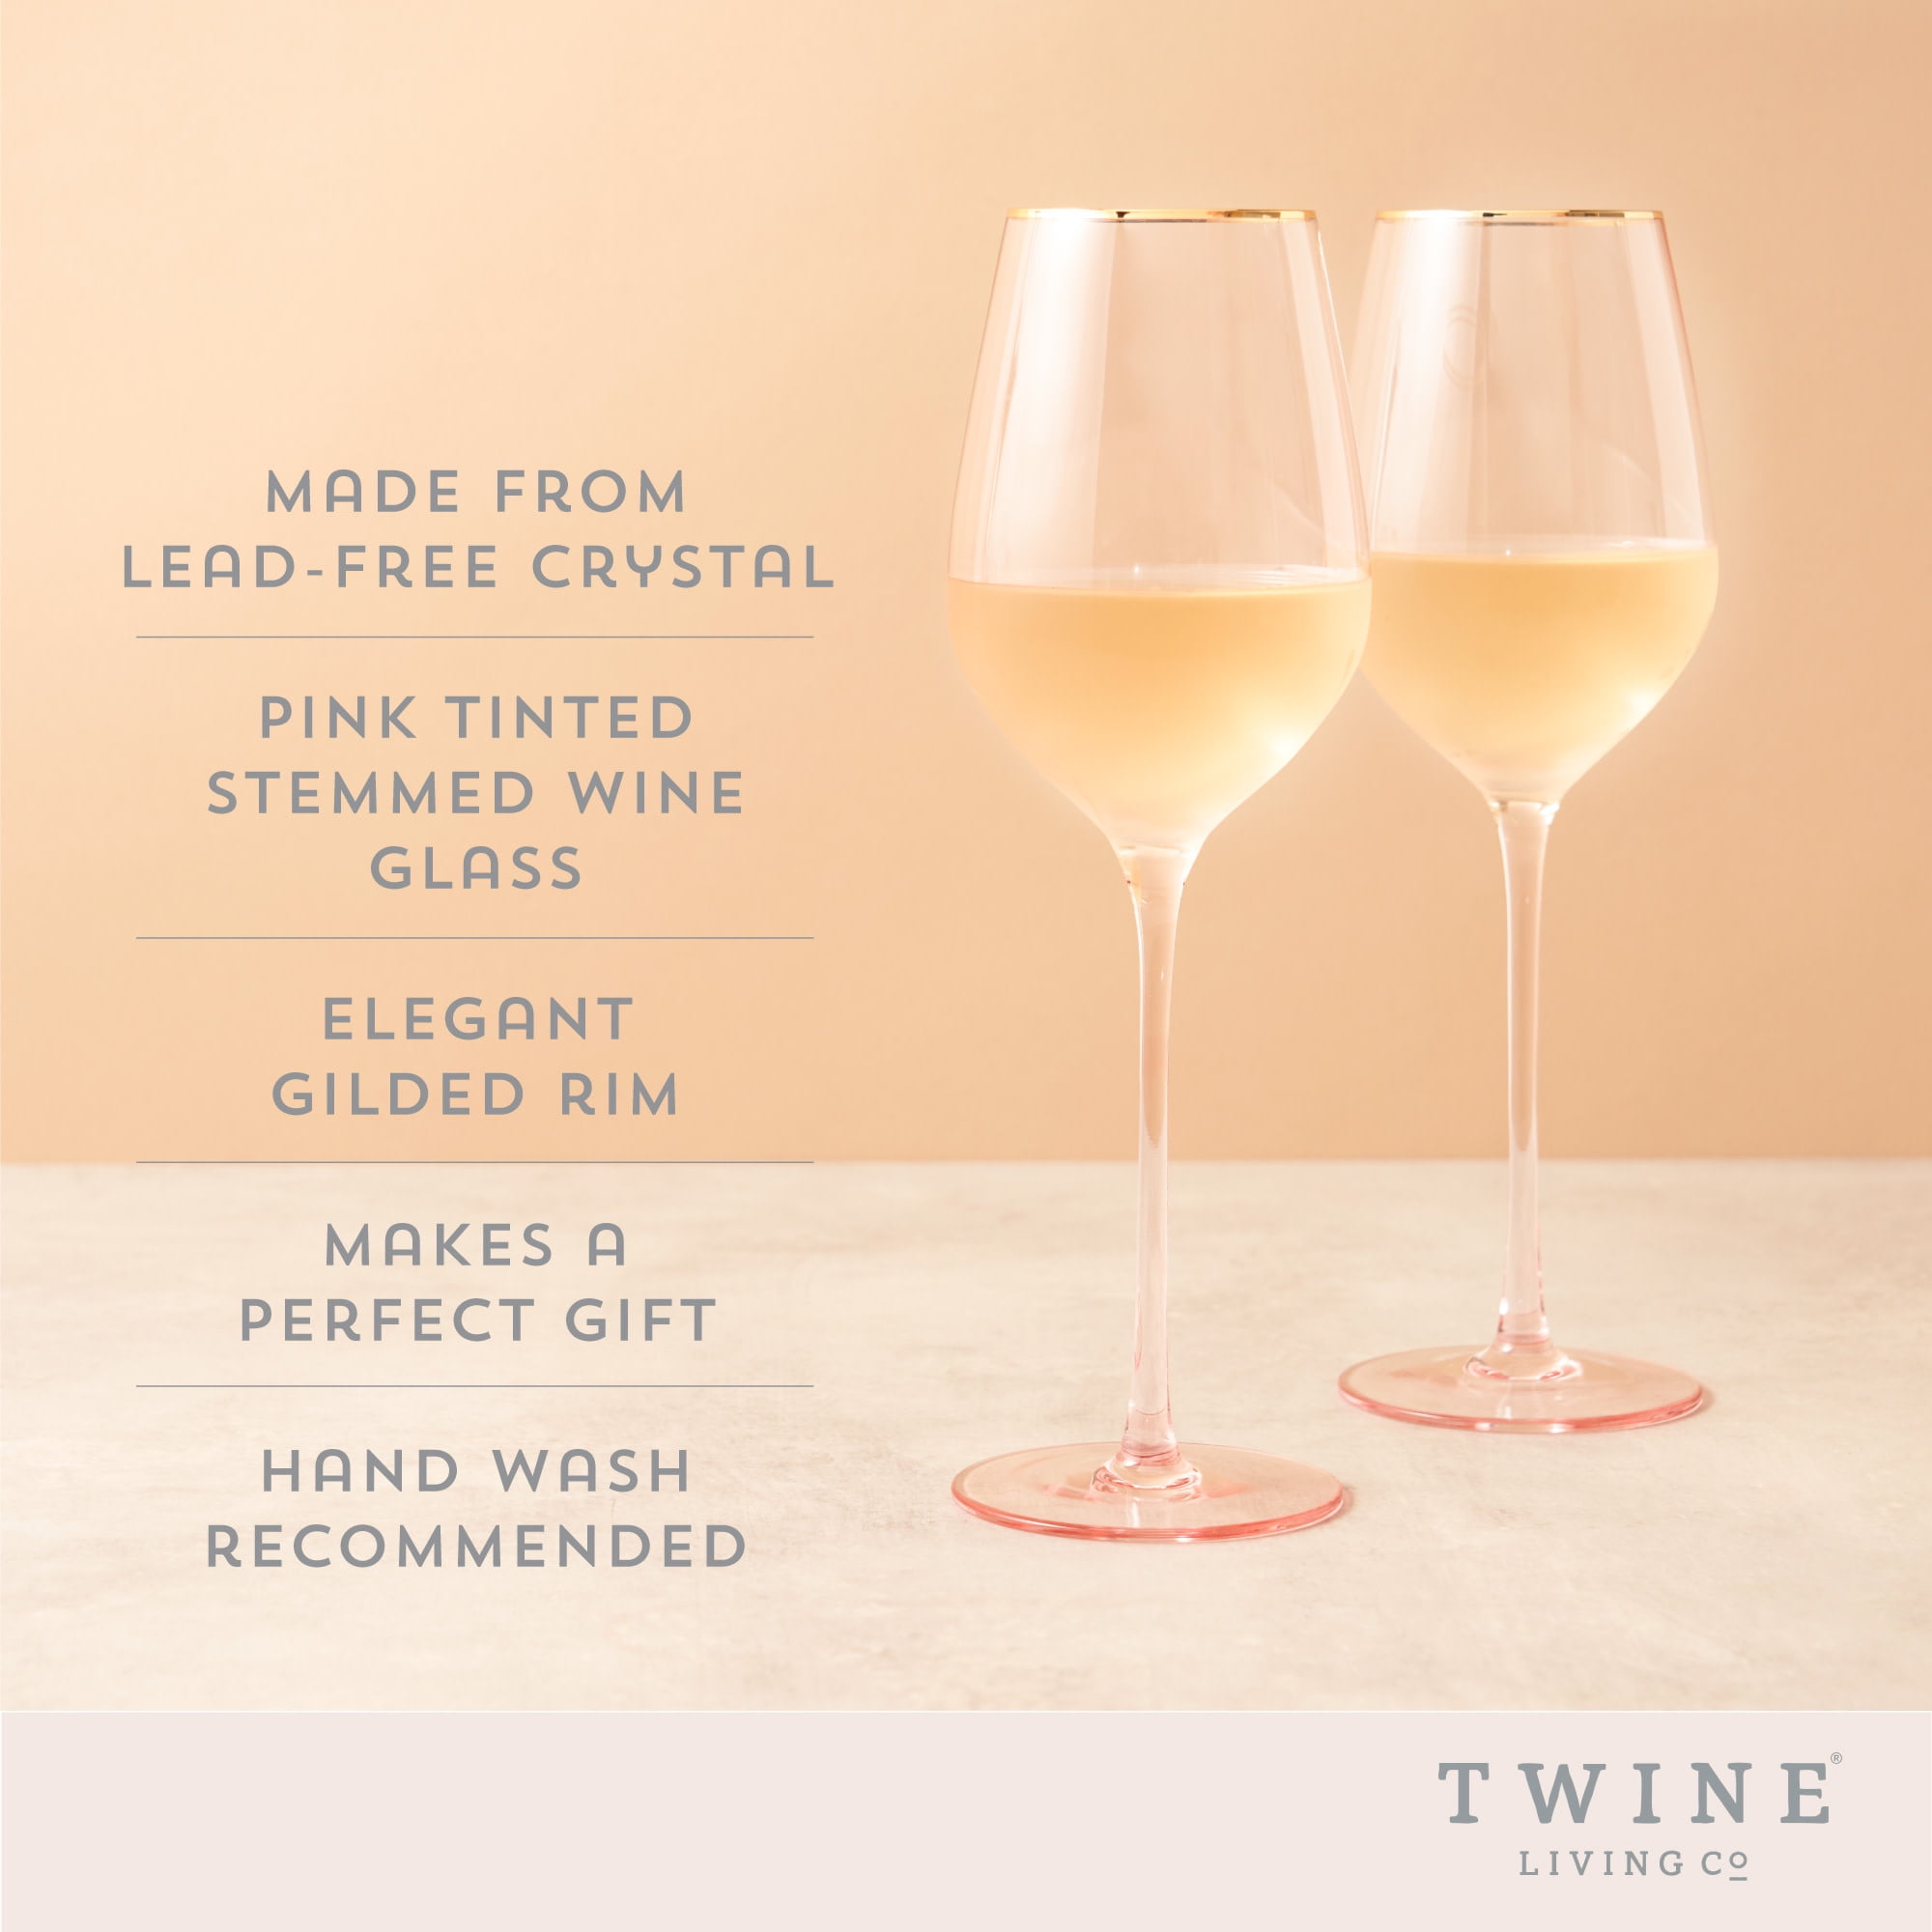 Weinglas Pink oder Gold